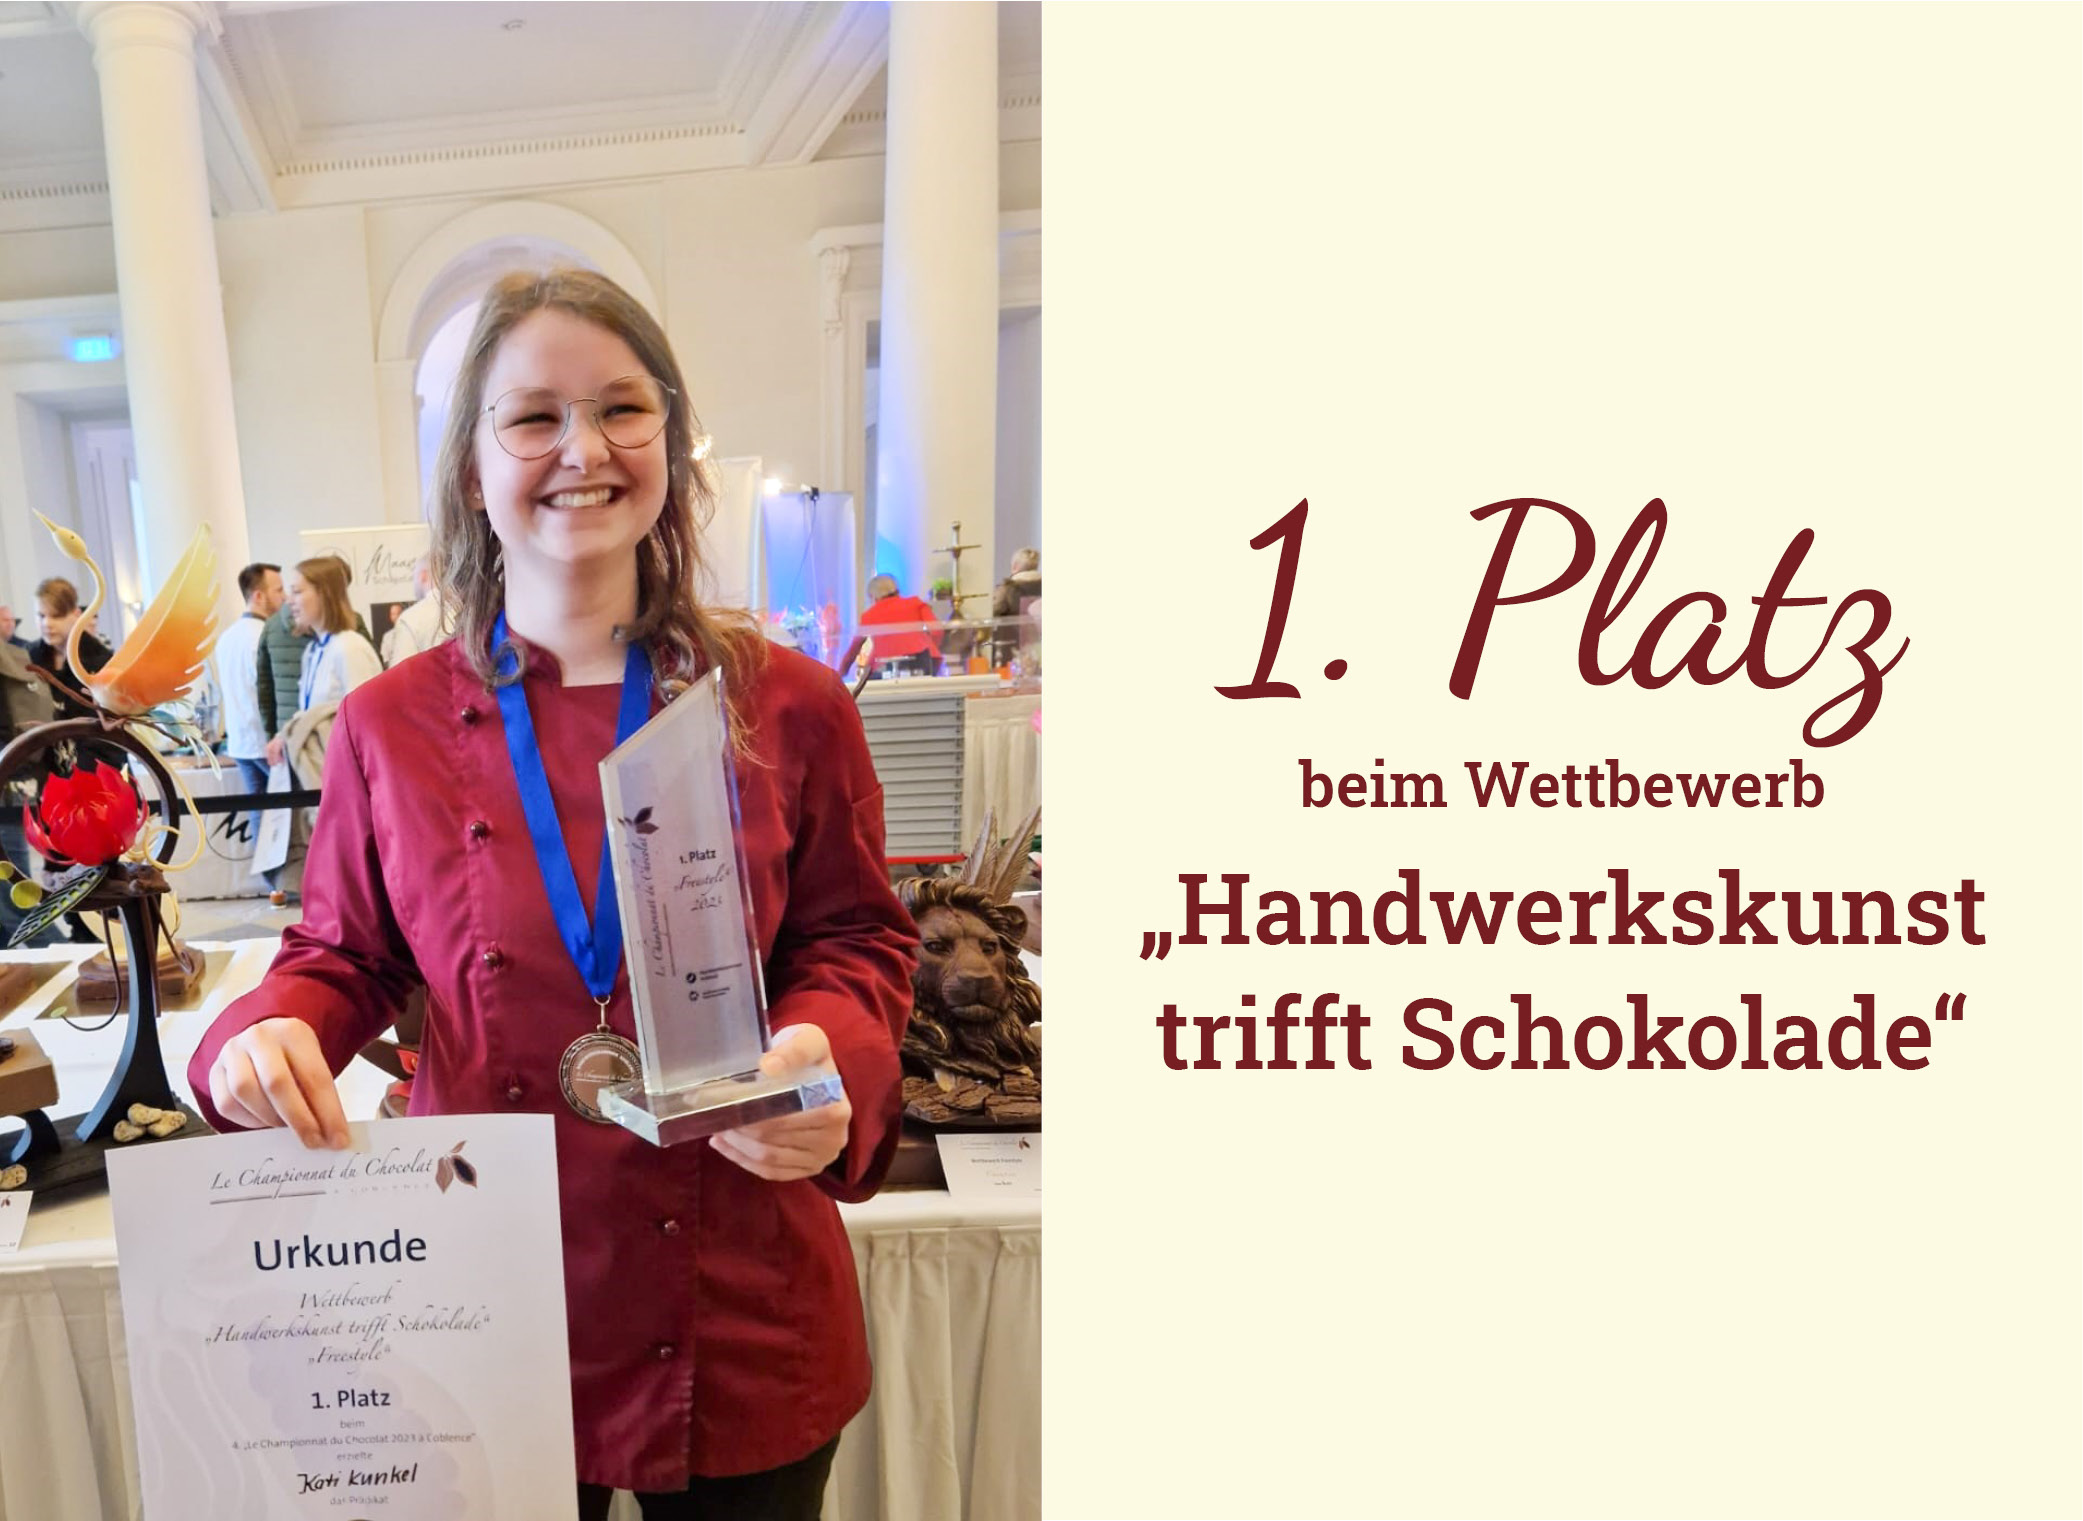 Gilgen’s Auszubildende Kati Kunkel gewinnt beim „Handwerkskunst trifft Schokolade“ Wettbewerb